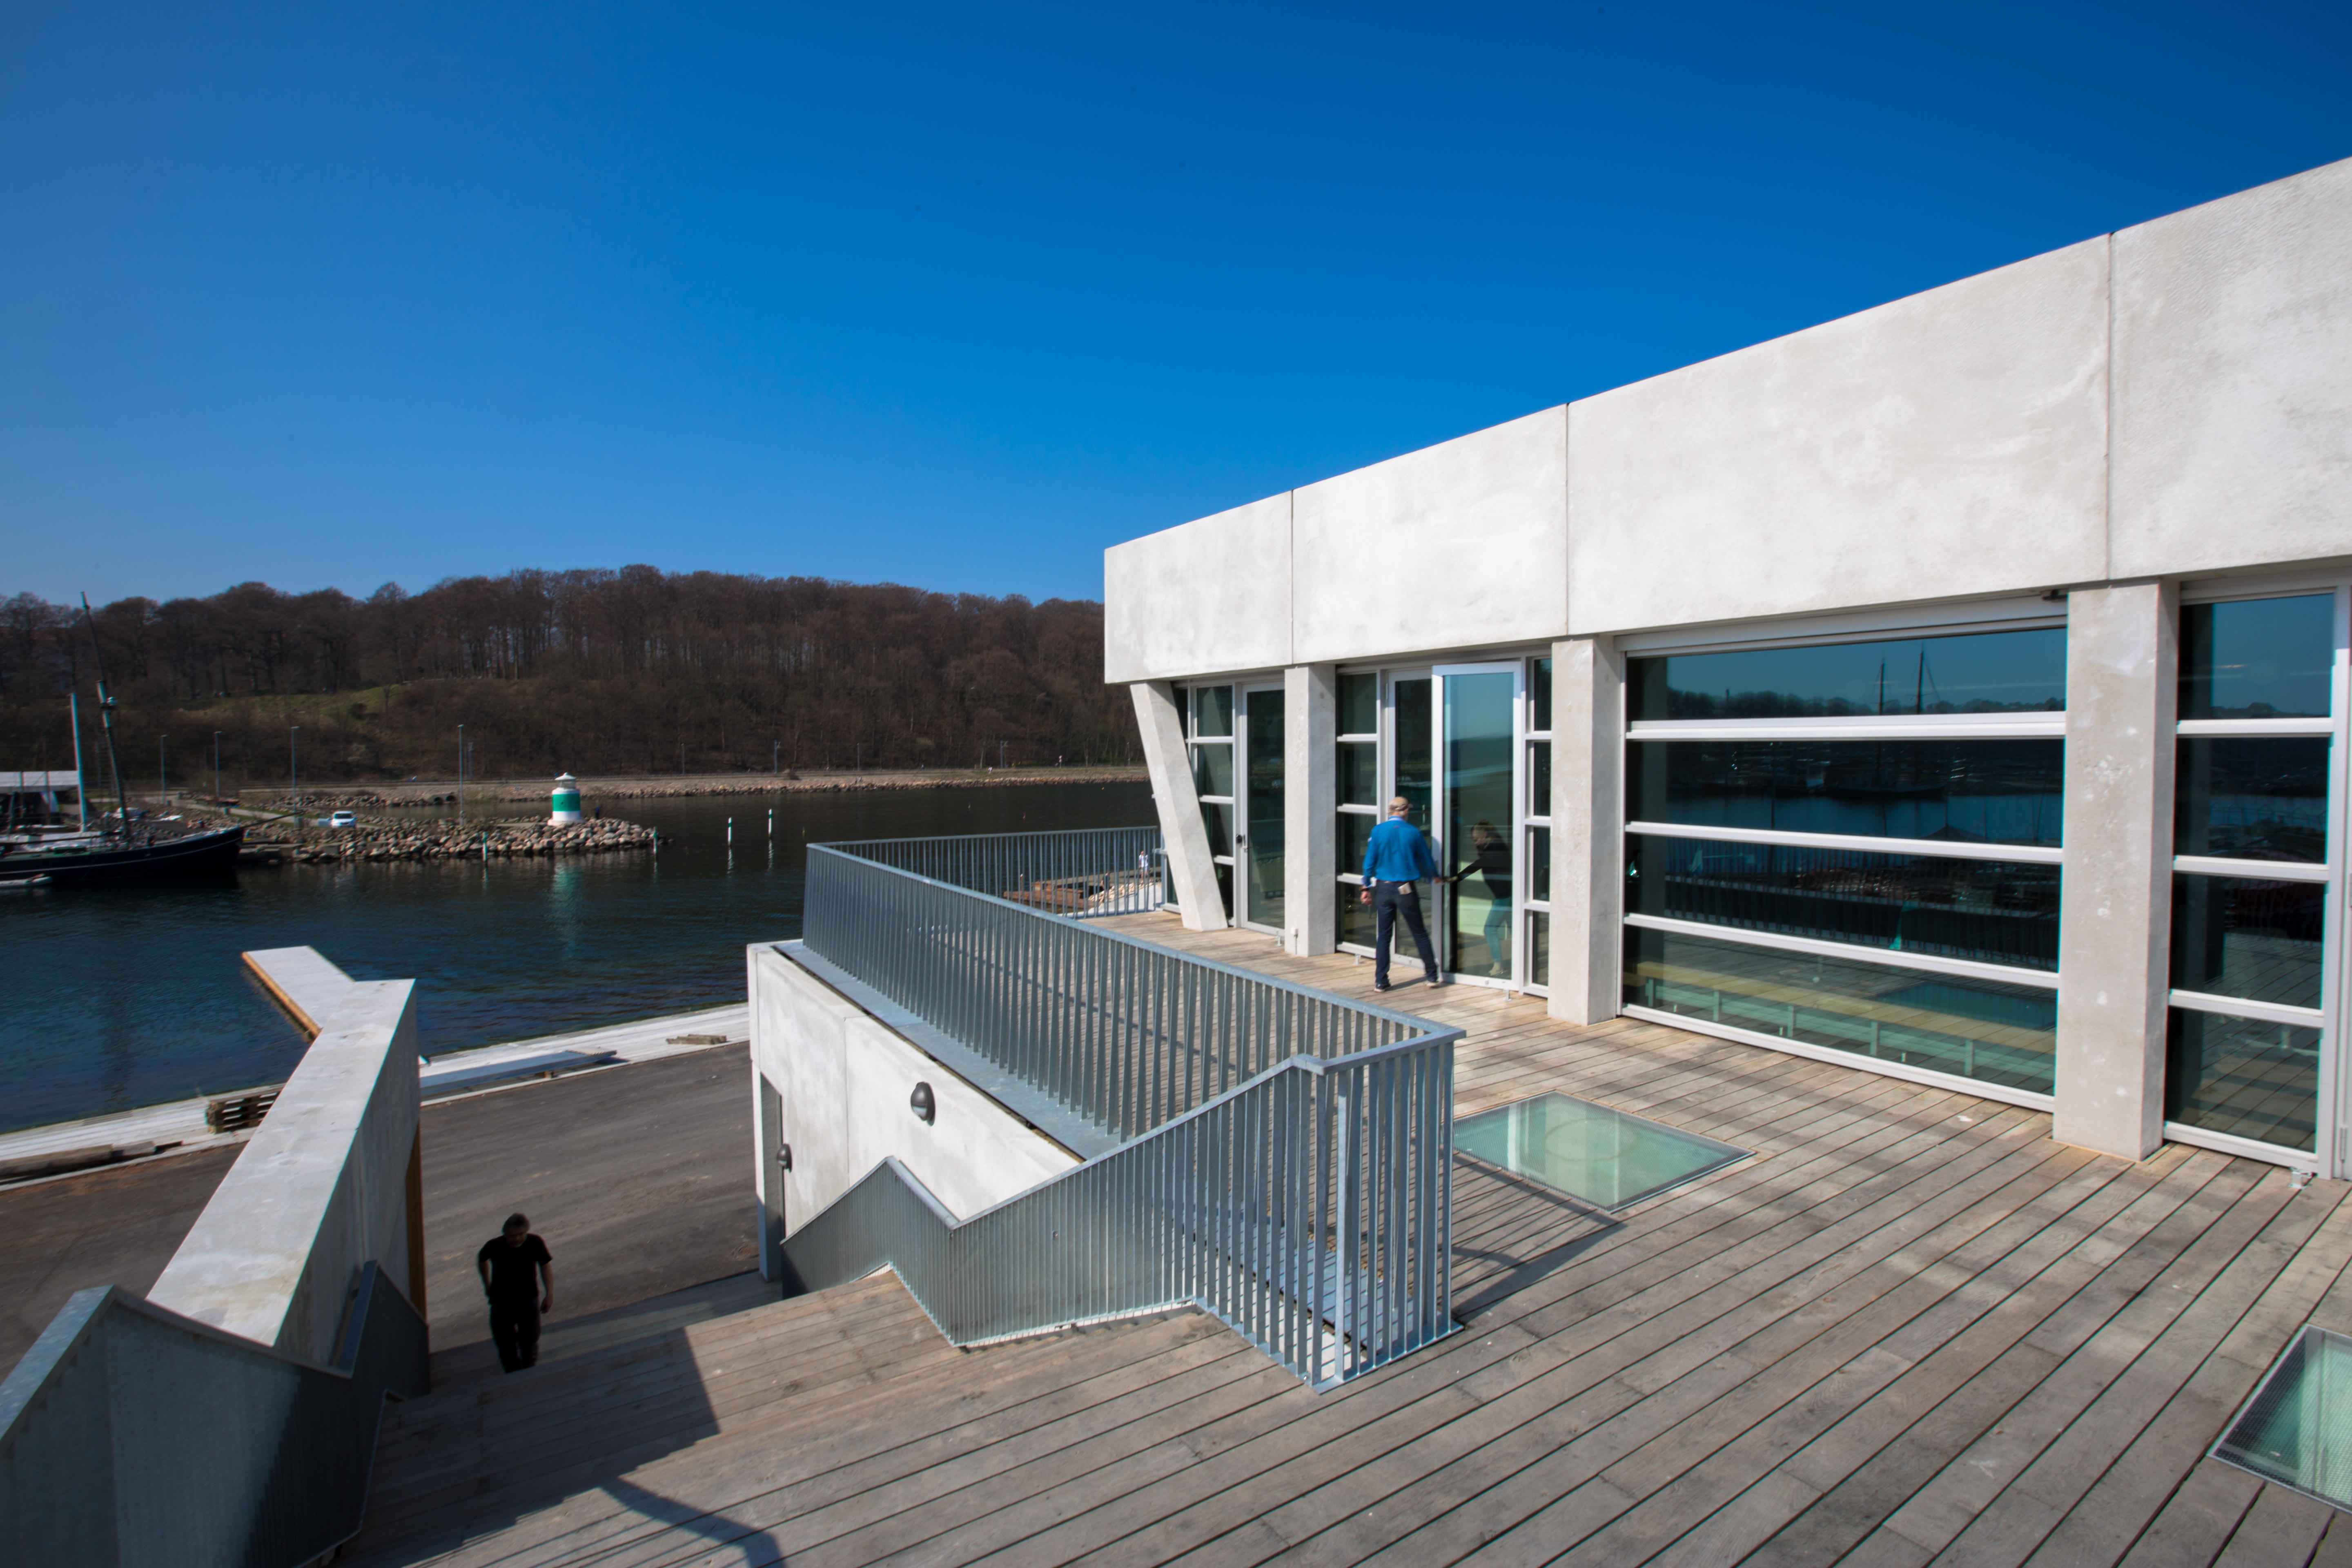 Centeret åbner sig mod offentligheden med bl.a. en stor terrasse med indblik til aktiviteterne. Foto: Peter Brøgger